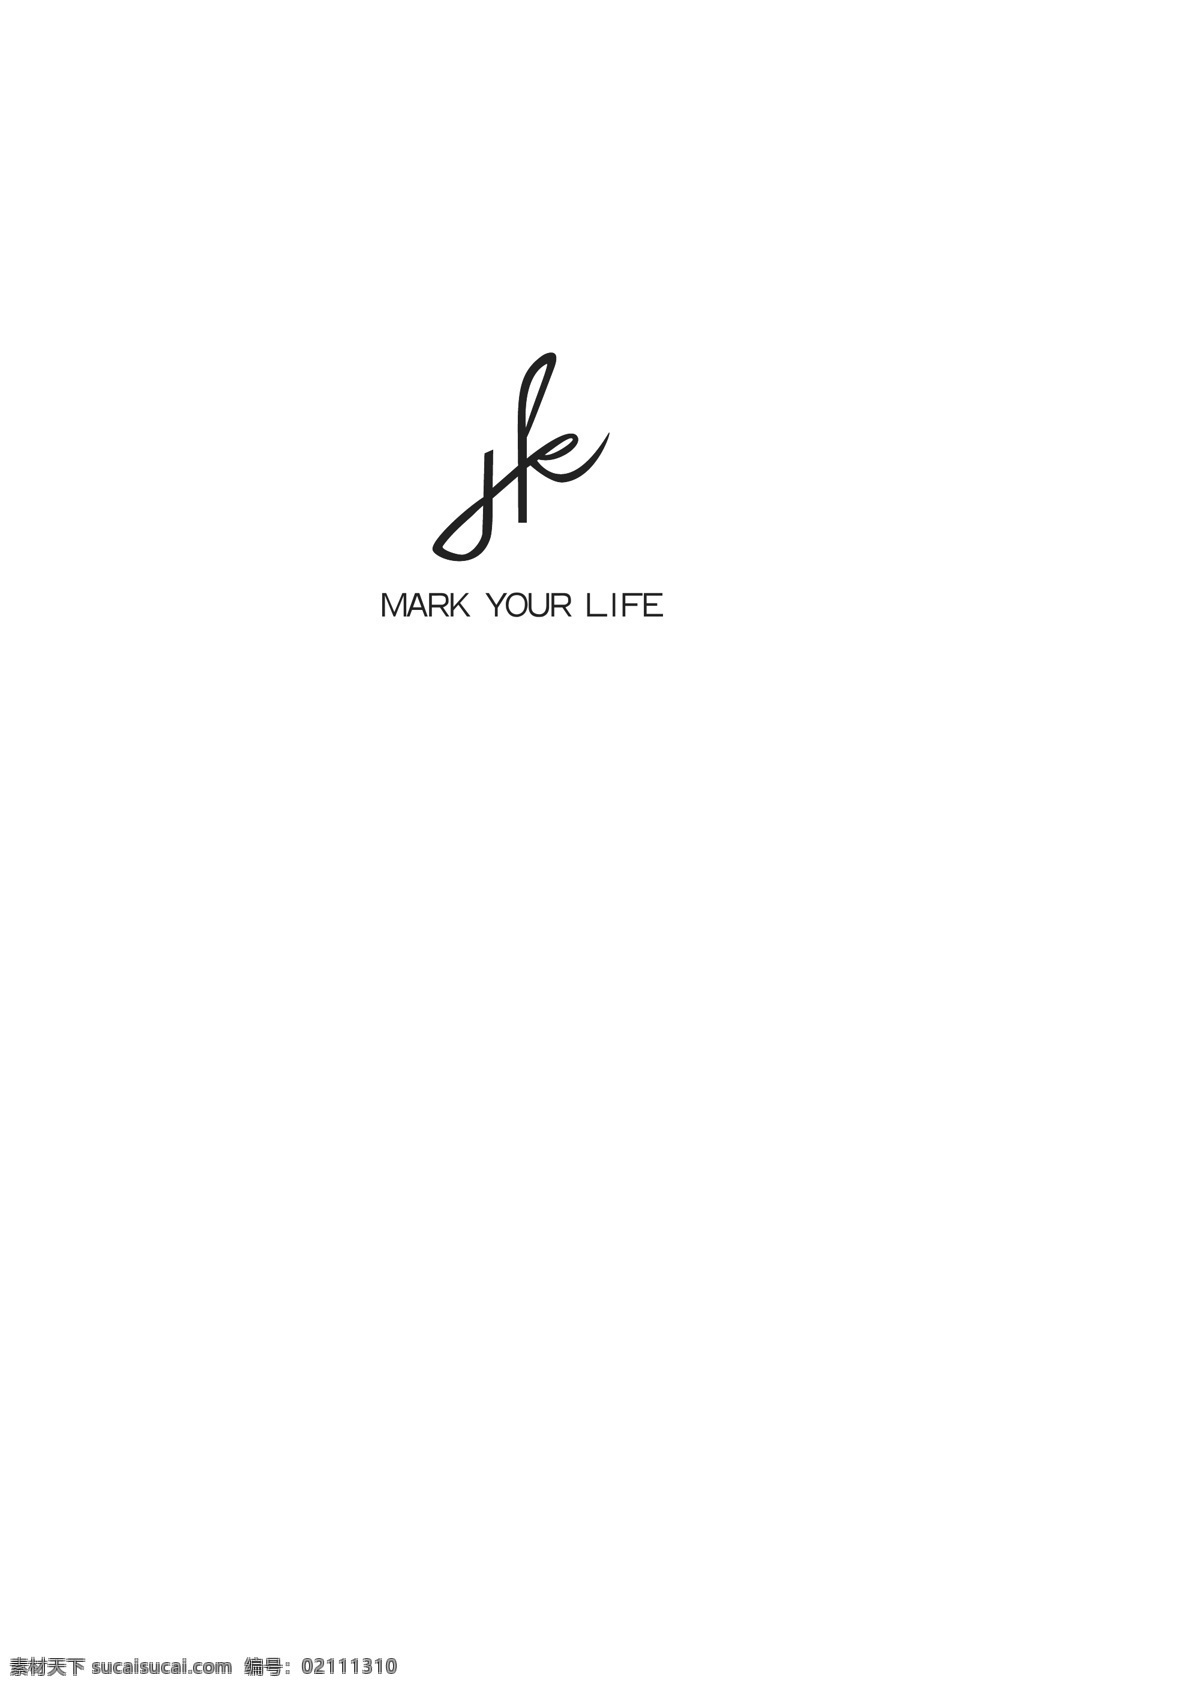 字体 变形 logo hk 字体变形 mark your life ai原文件